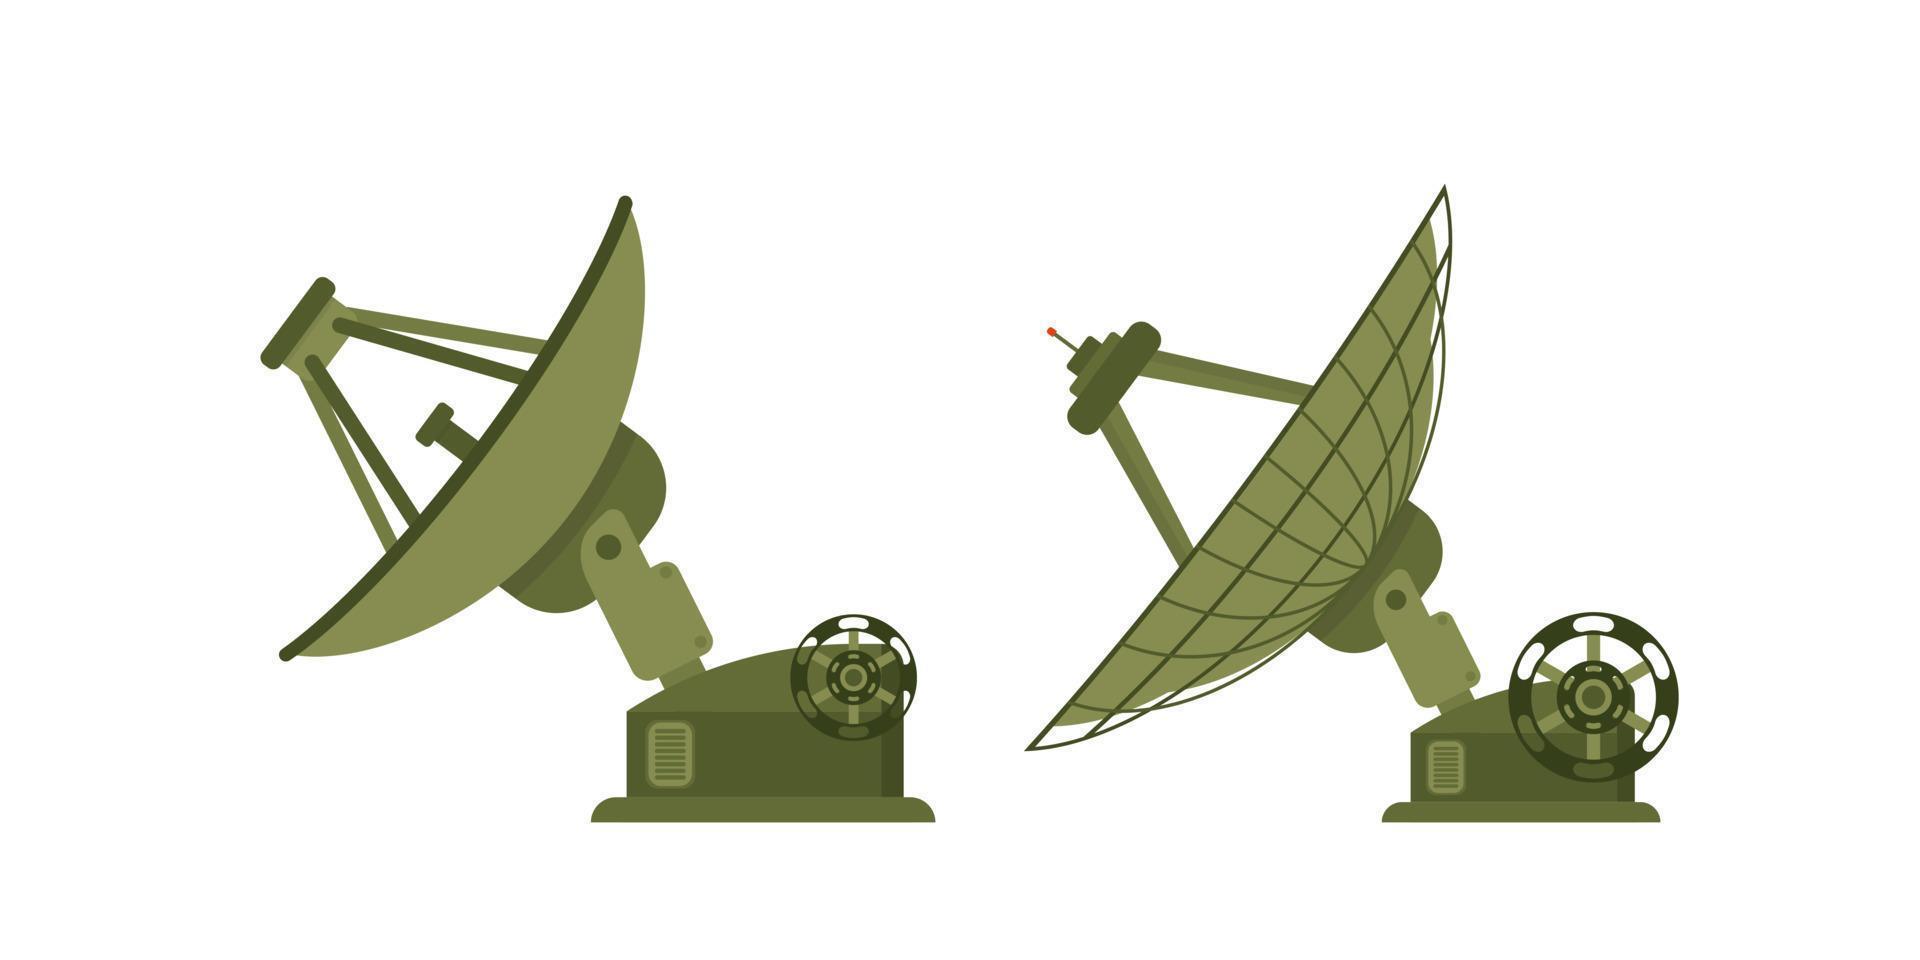 Satellitenantennensymbol auf weißem Hintergrund. Abbildung im flachen Stil des Radioteleskops. vektor